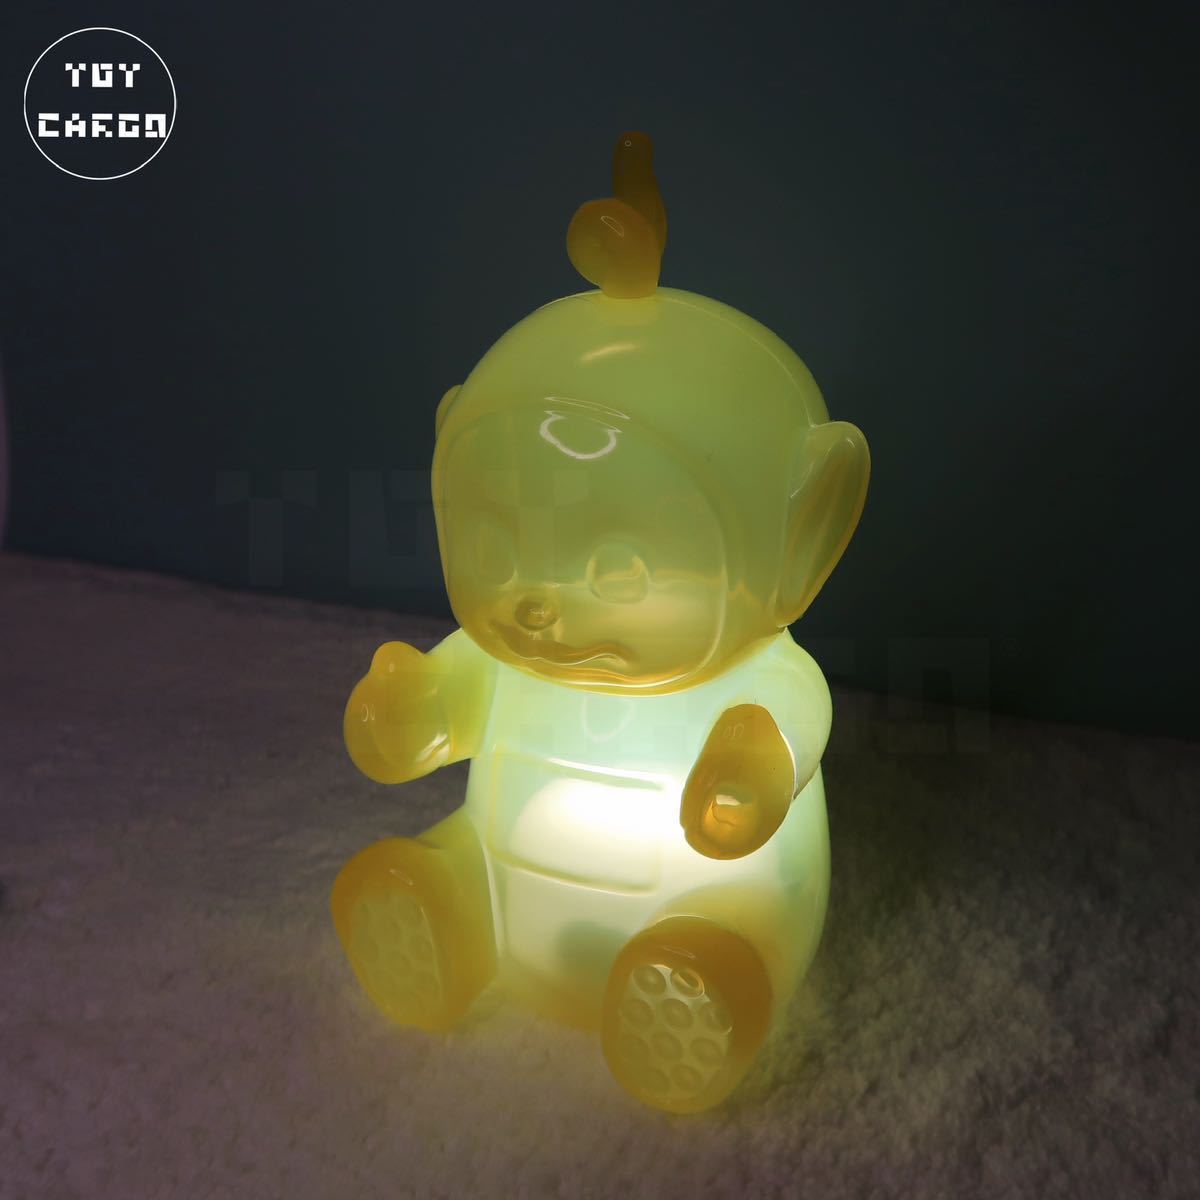 [ Телепузики ]la- ковер mi свет осветительное оборудование лампа смешанные товары интерьер фигурка игрушка искусство игрушка 